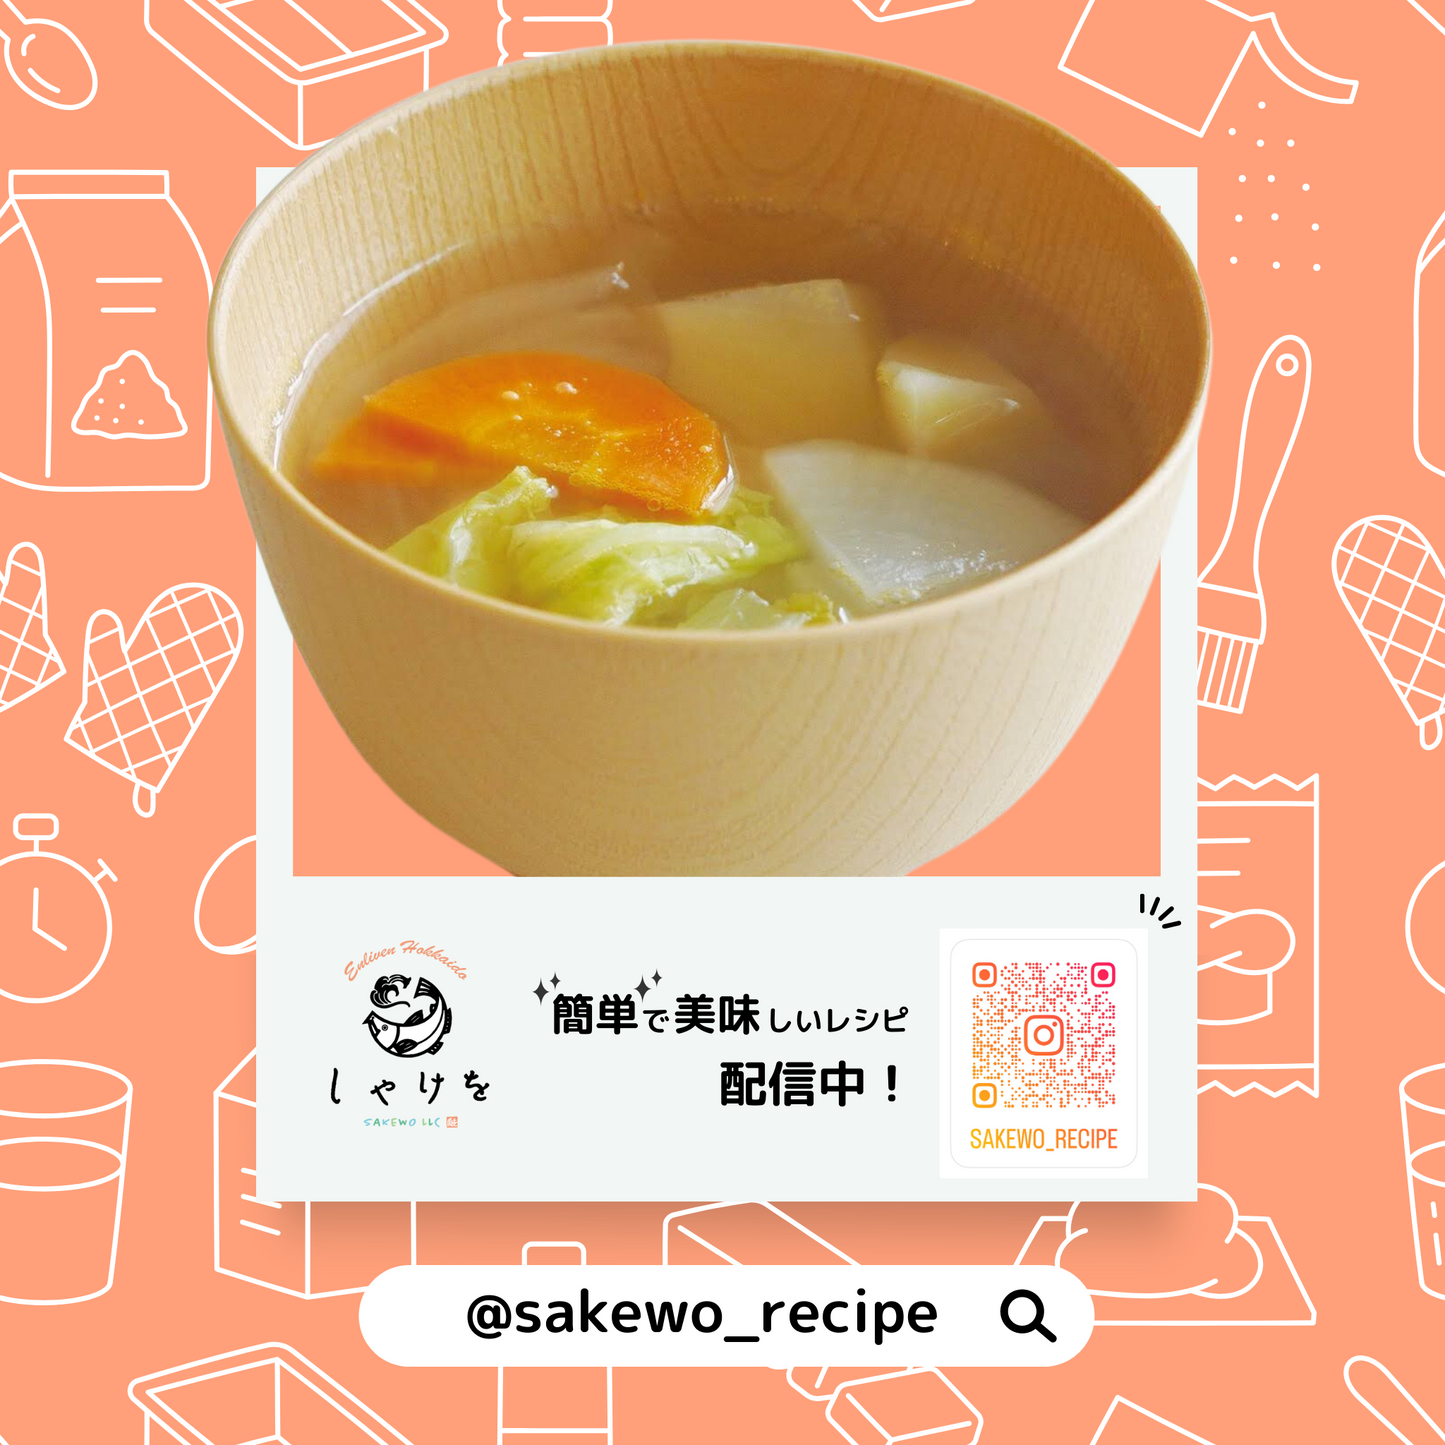 インスタグラムで「簡単で美味しいレシピ」を配信しています。@sakewo_recipeで検索してみてください。